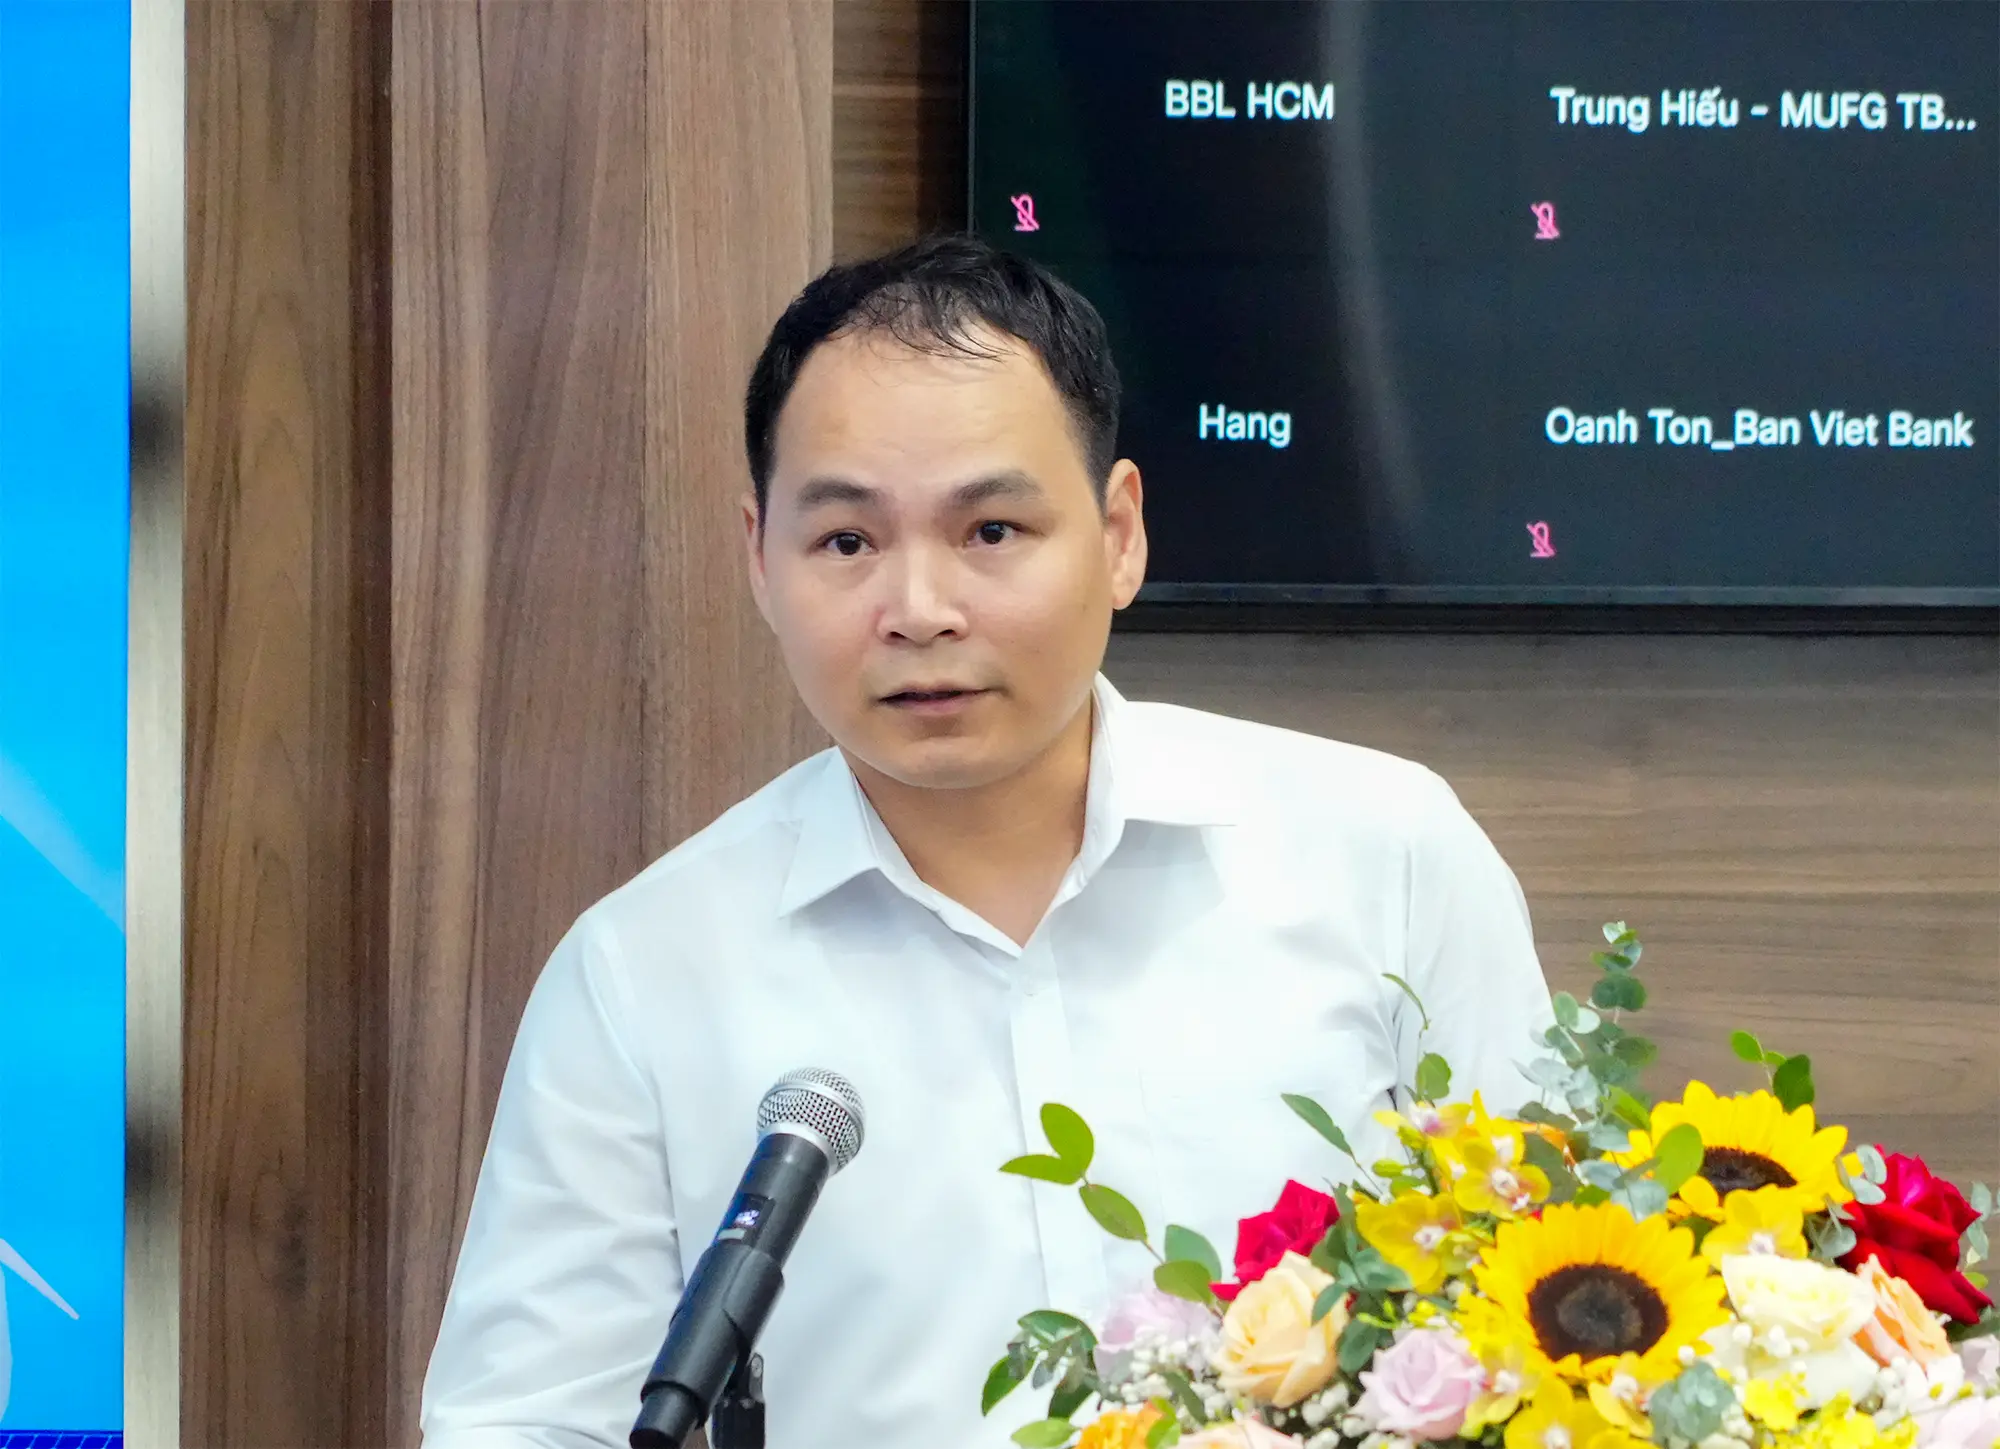 Ông Trần Anh Quý – Trưởng phòng tín dụng chính sách, Ngân hàng Nhà nước Việt Nam